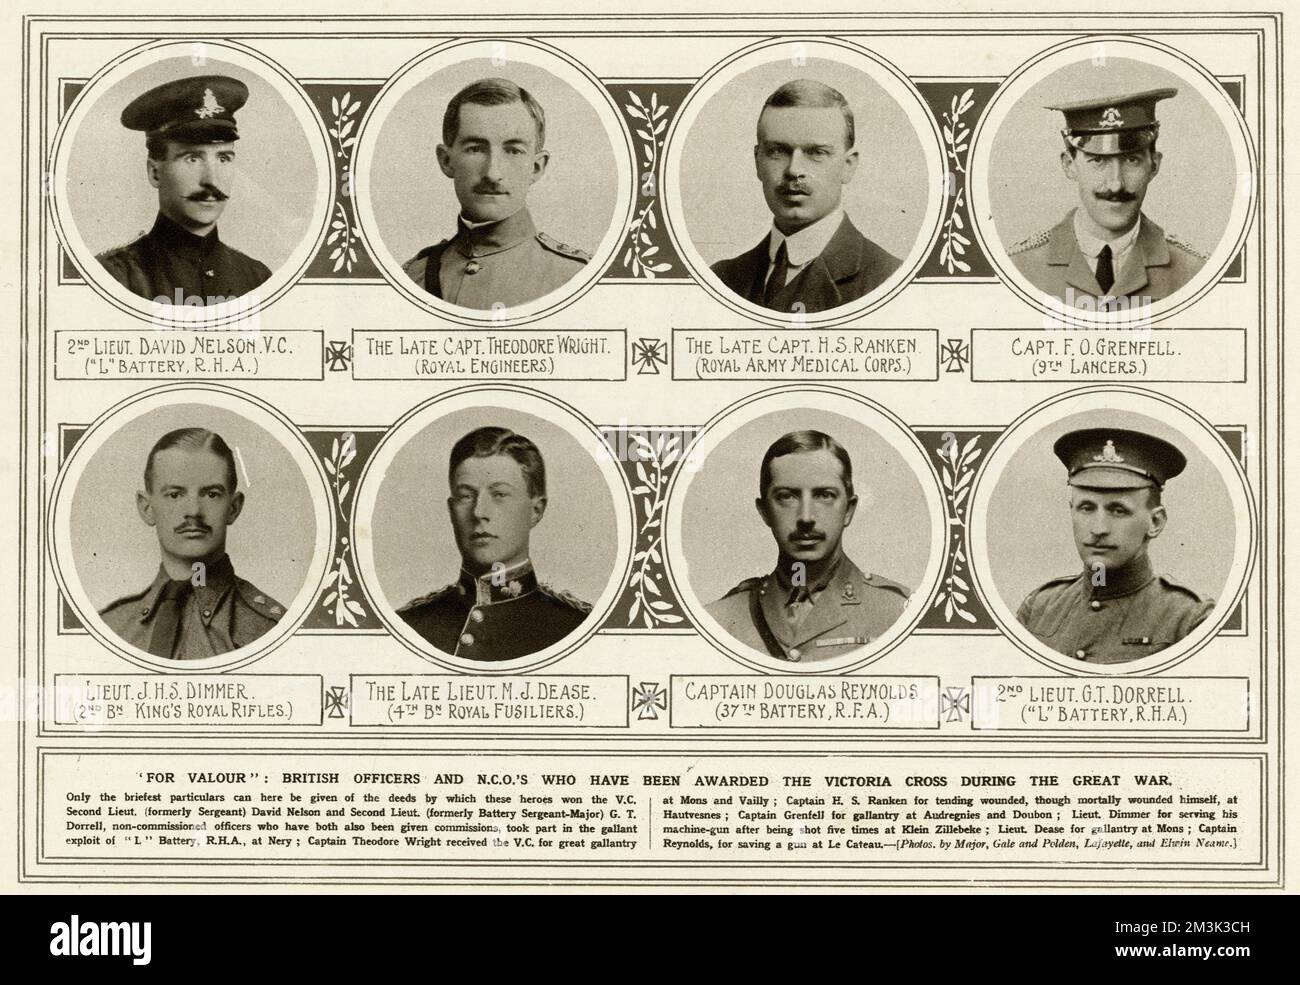 Britische Offiziere und N.C.O's, die während des 1. Weltkriegs mit Victoria Cross ausgezeichnet wurden: Von oben links: 2. Lieut David Nelson V.C. Captain Theodore Wright. (Königliche Ingenieure); Captain H.S. Ranken (Royal Army Medical Corps); Hauptmann F.O. Grenfell (9. Lancers); Lieut J.H.S. Dimmer (2. Mrd. Königliche Gewehre); Lieut M.J. Dease (4. Mrd. Royal Fusiliers); Captain Douglas Reynolds (37. Batterie, R.F.A.); 2. Lieut G.T. Dorrell ('L' Battery, R.H.A.) 1914 Stockfoto